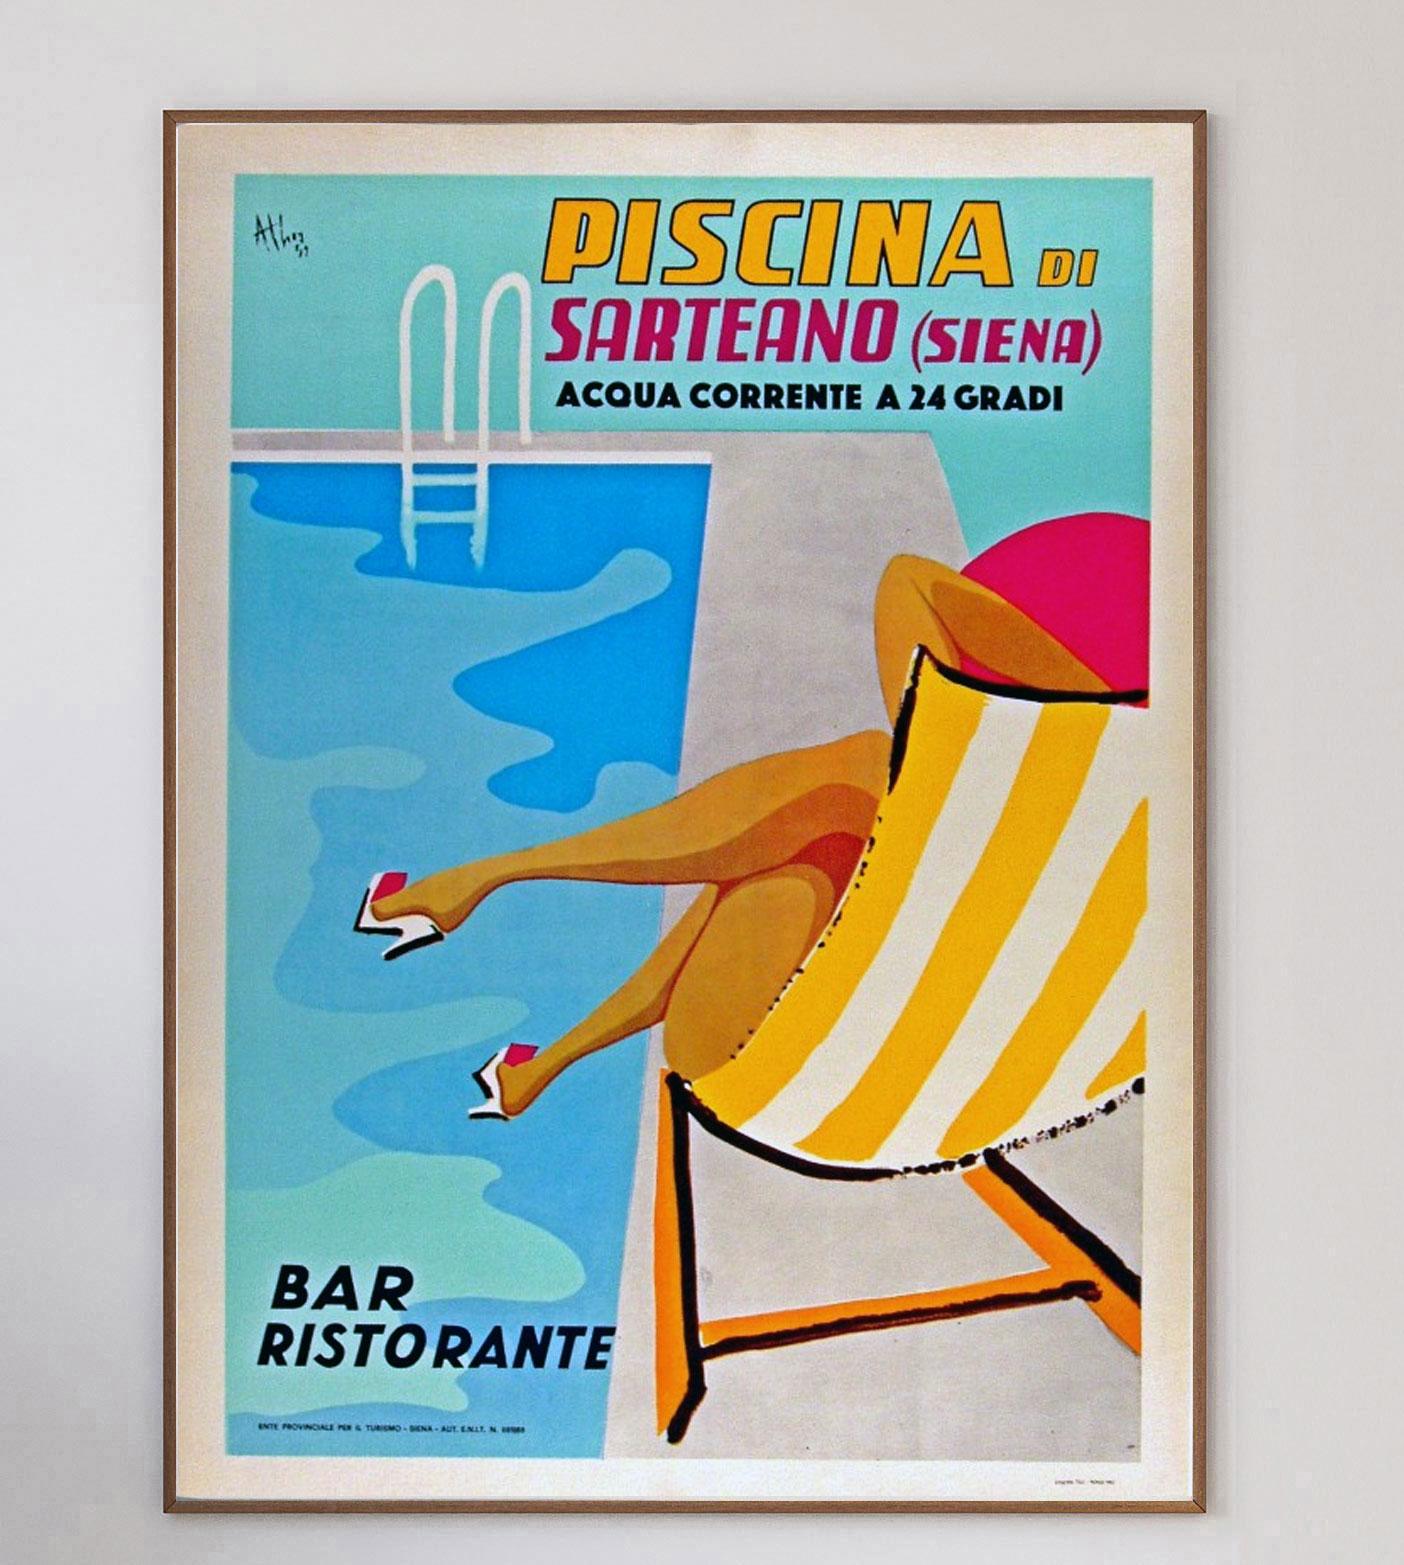 Une superbe affiche conçue par Athoy en 1962 pour annoncer une piscine publique à Sarteano, Sienne en Italie. Les magnifiques œuvres d'art du milieu du siècle vous transportent au début des années 60, baignées de soleil. L'affiche est en parfait